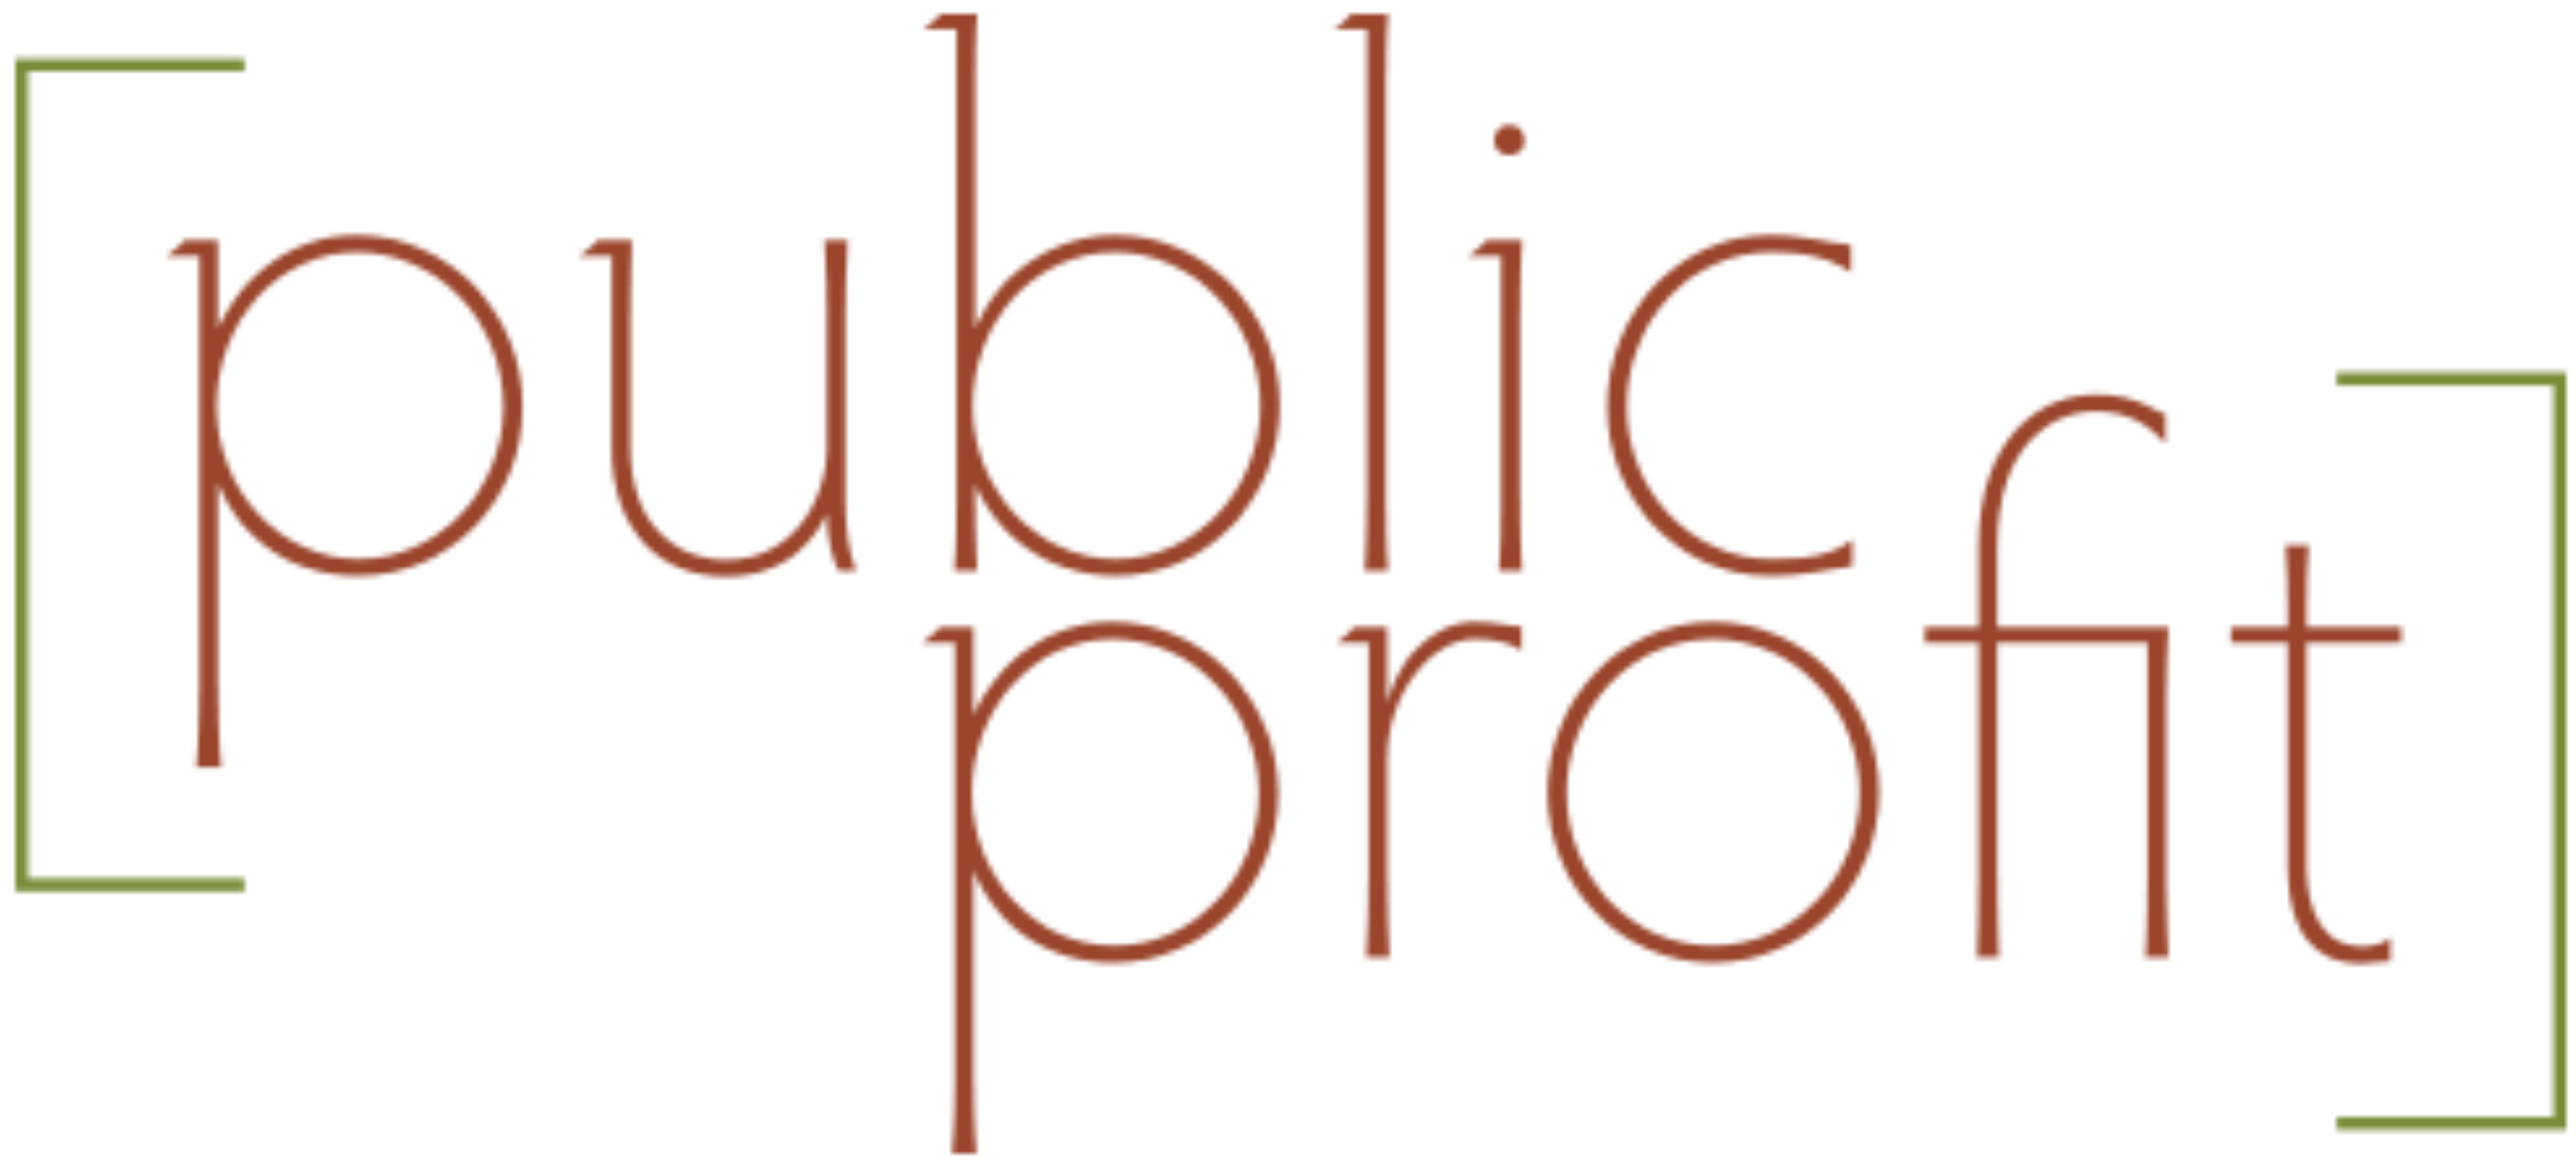 Public Profit